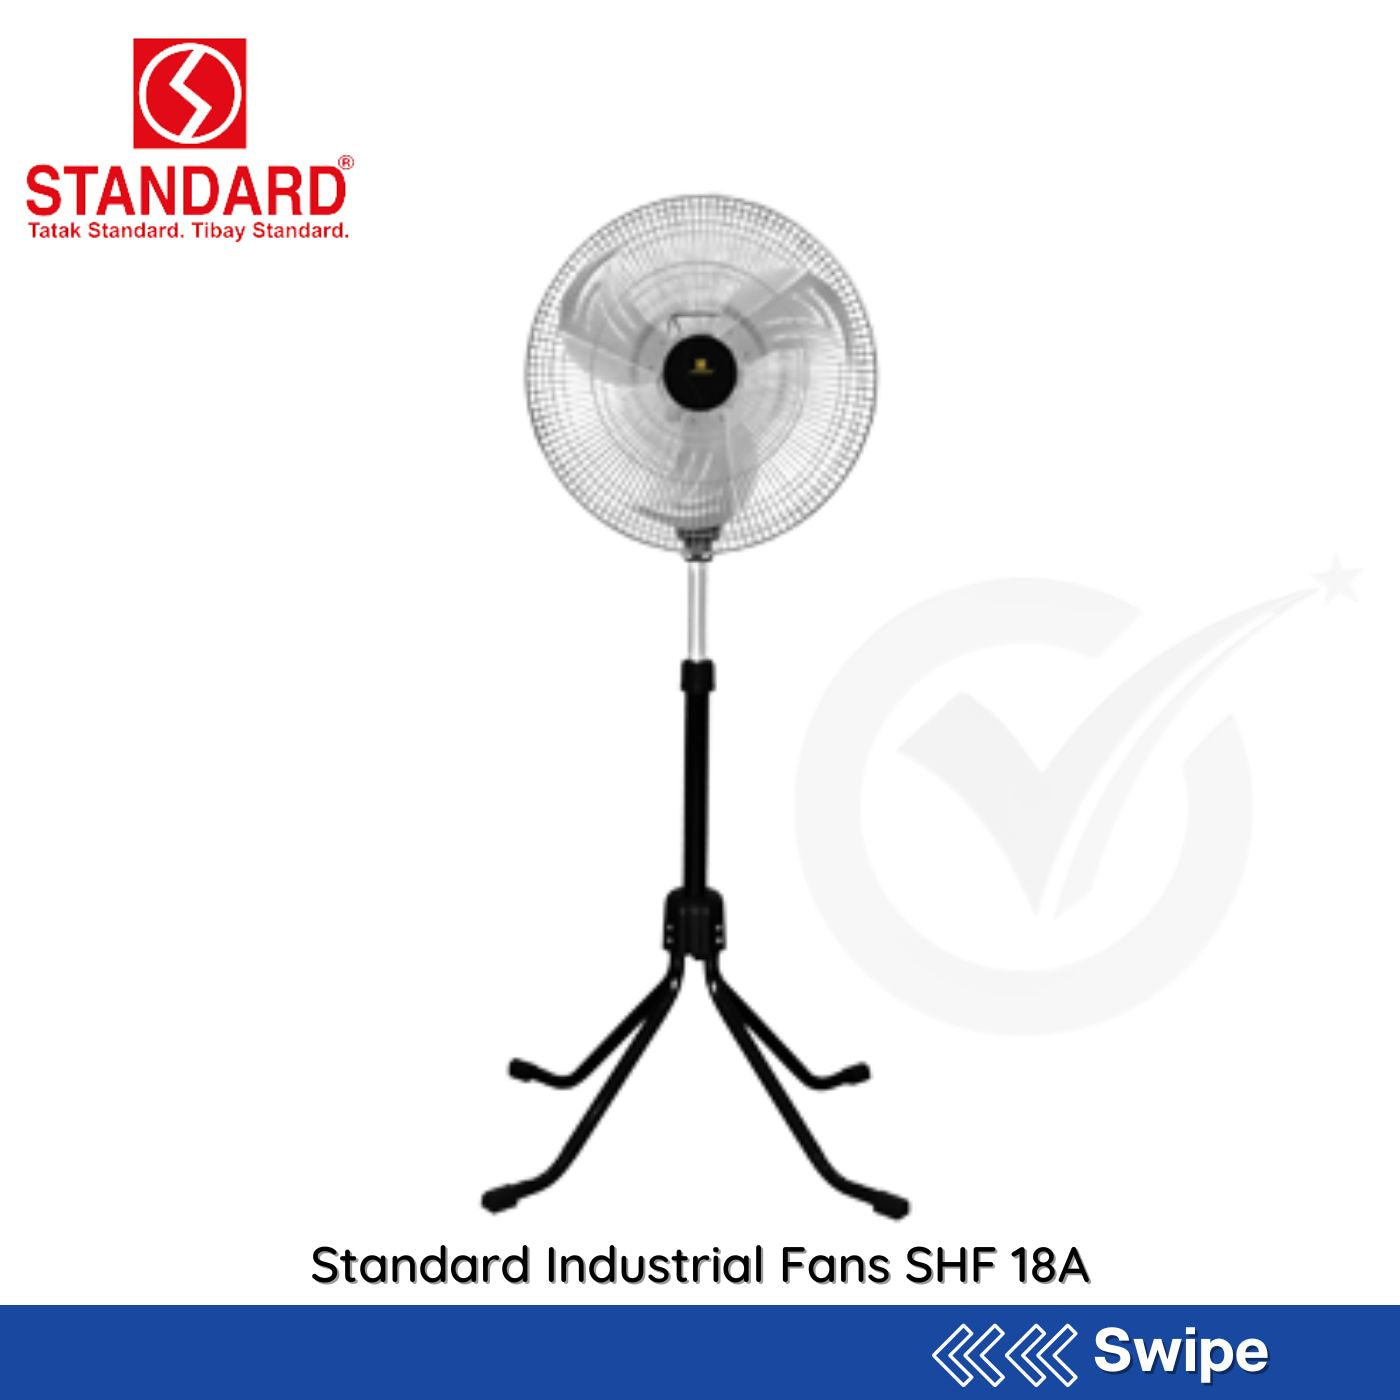 Standard Industrial Fans SHF 18A